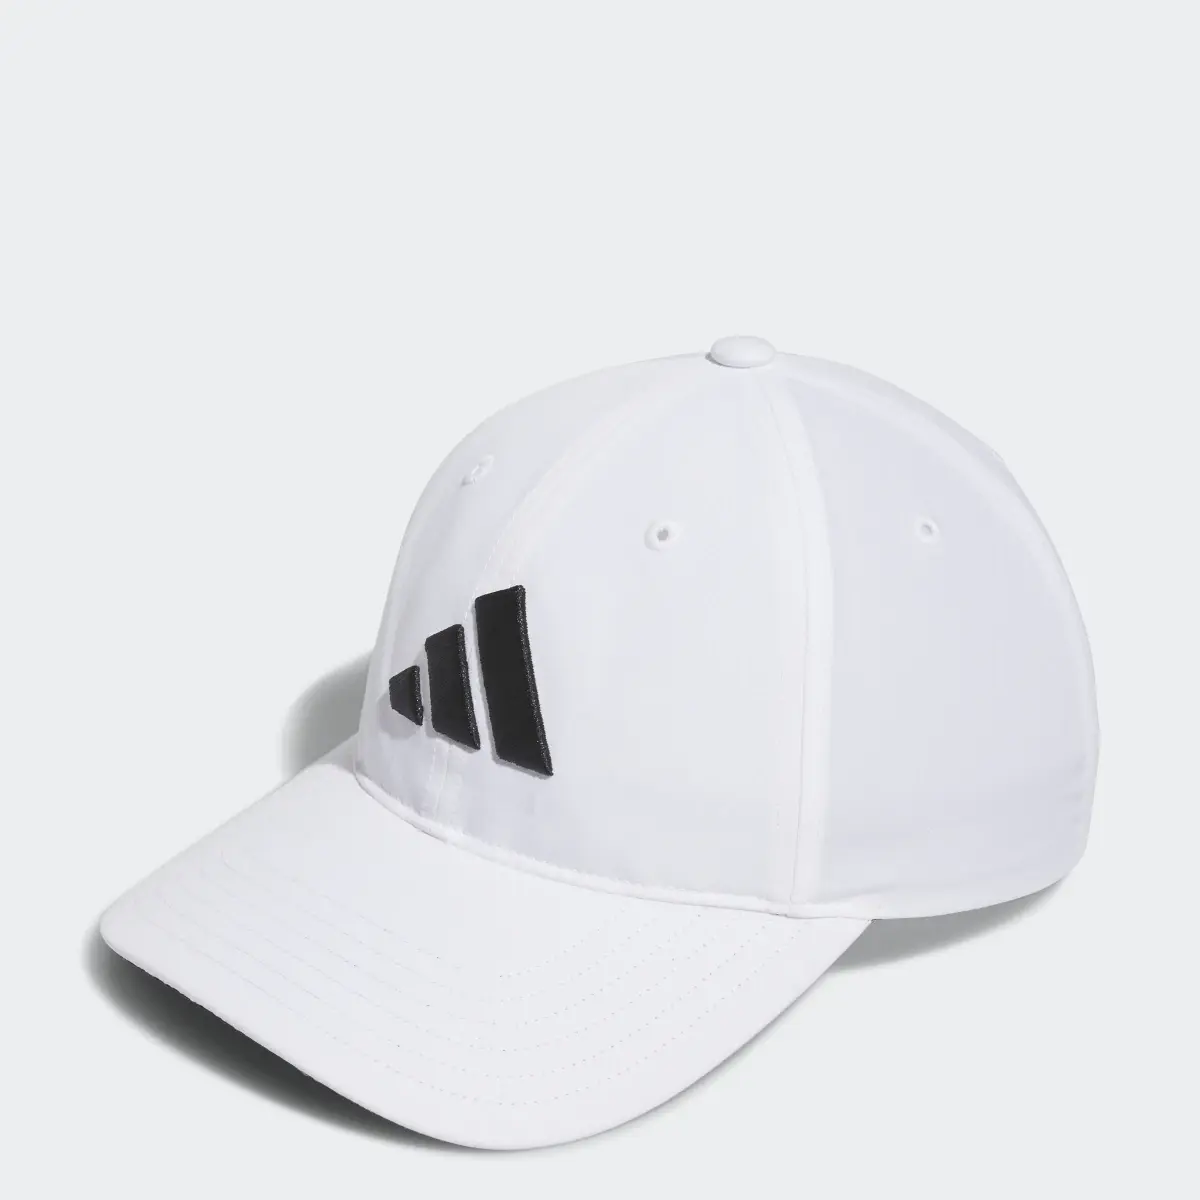 Adidas Cappellino da golf Performance EU. 1